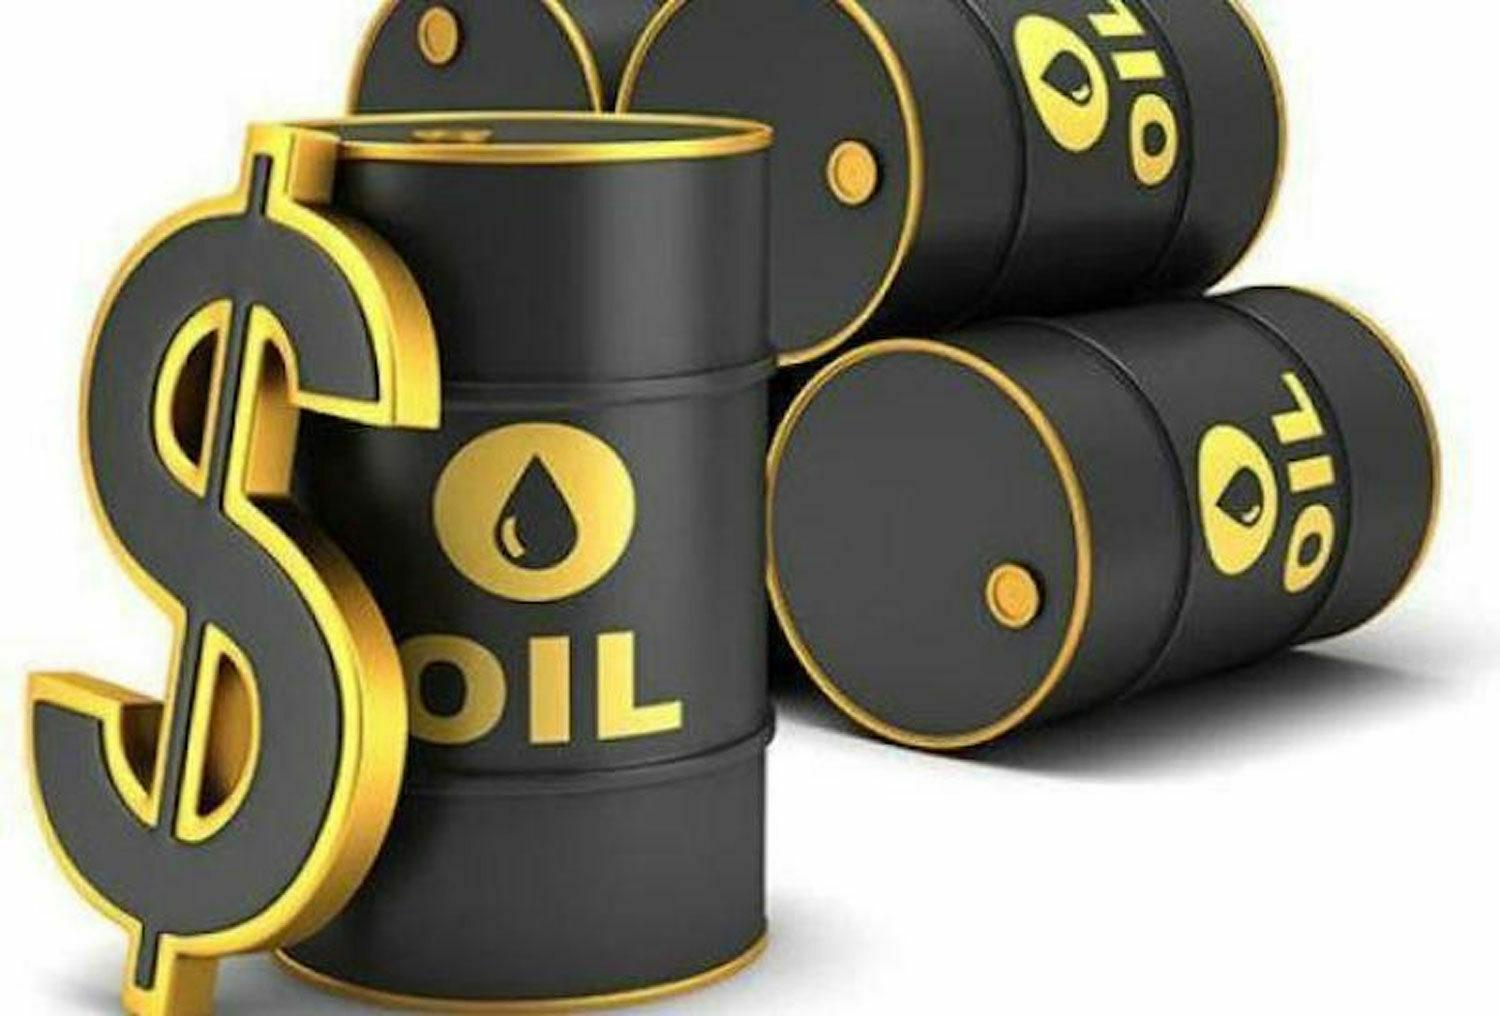 Crude oil price hits $65.85 per barrel after OPEC, Non-OPEC meeting